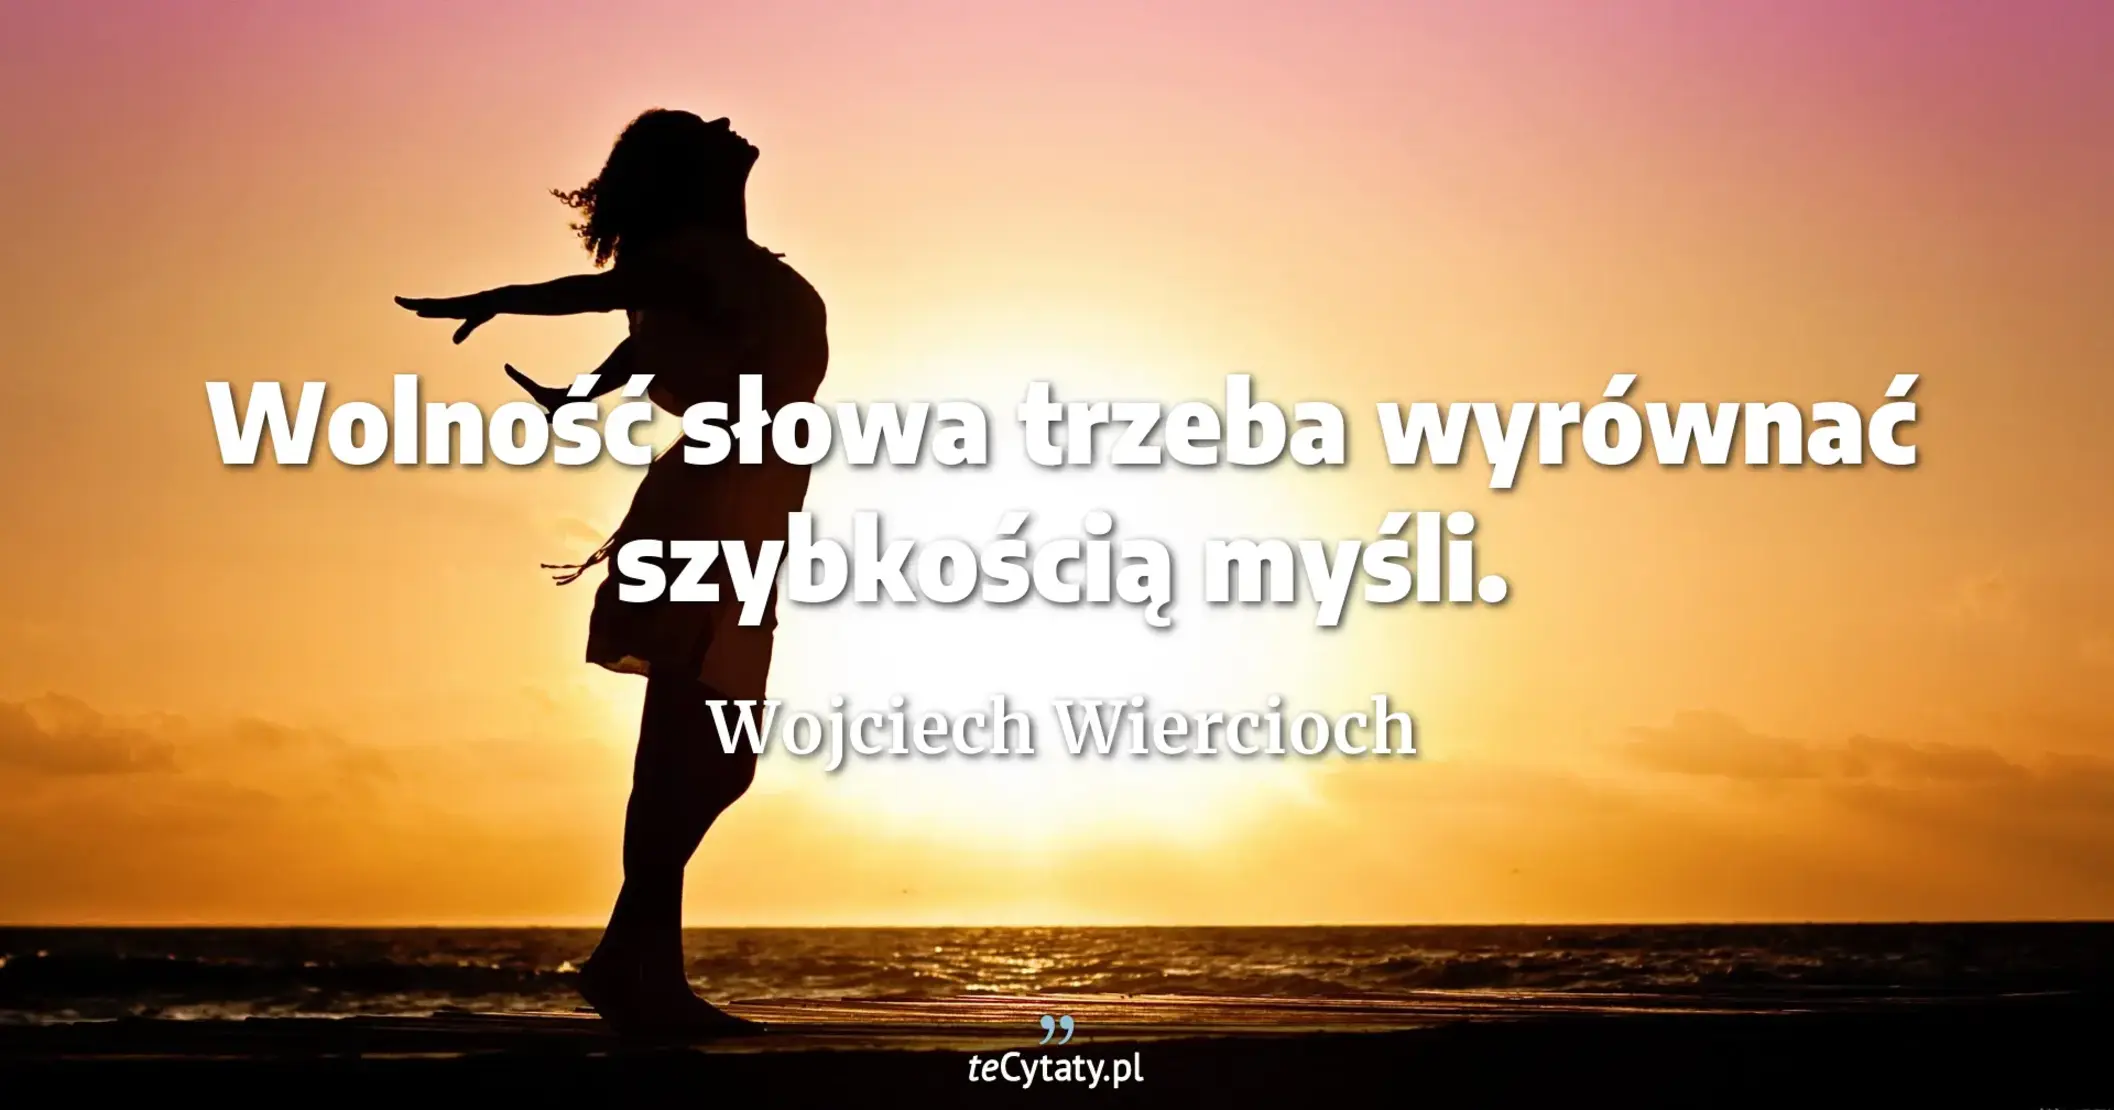 Wolność słowa trzeba wyrównać szybkością myśli. - Wojciech Wiercioch